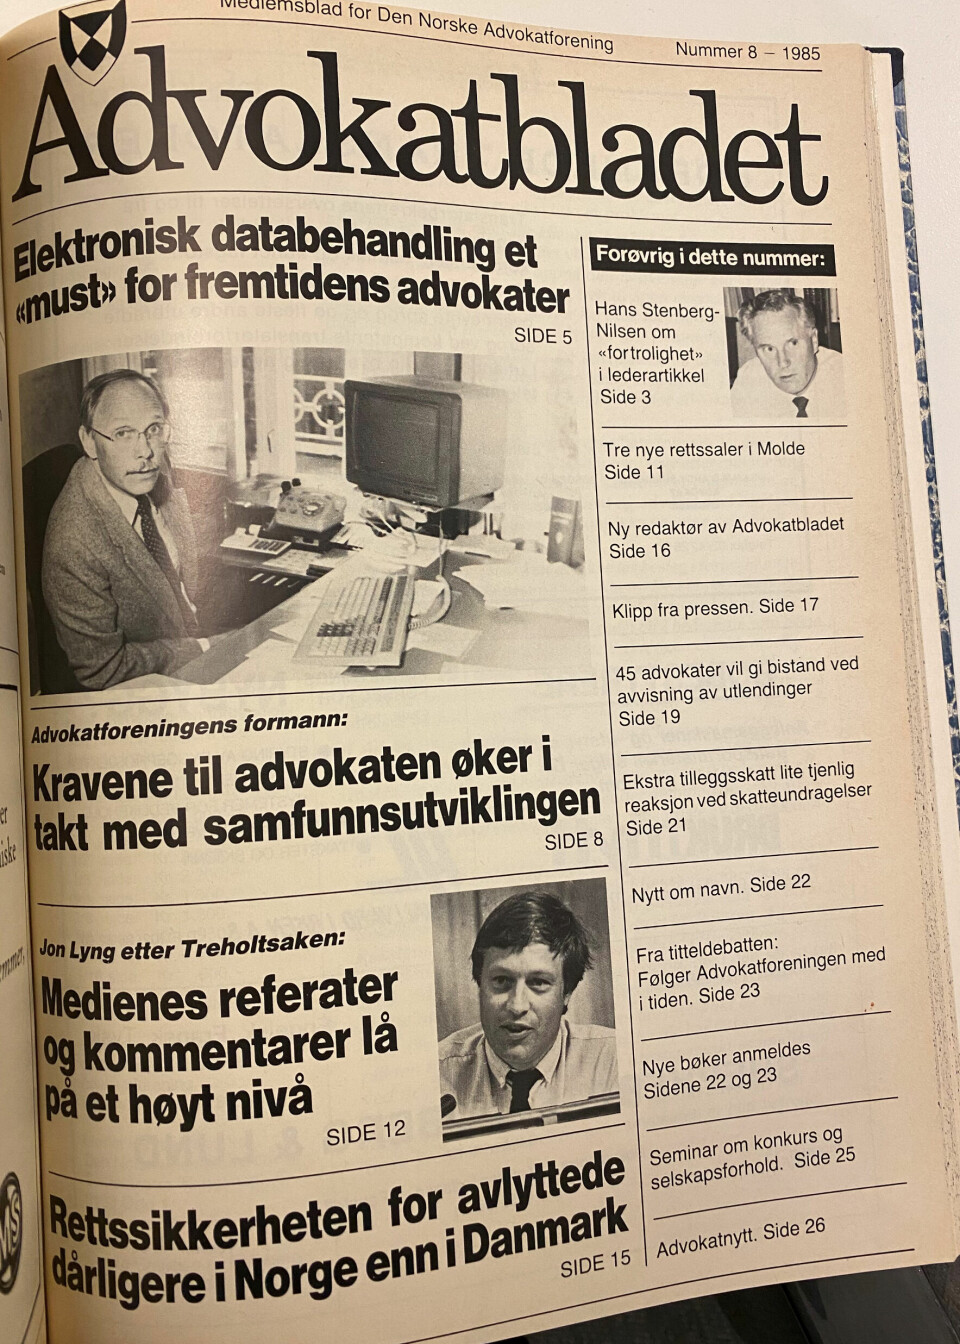 Advokatbladet kom for første gang ut med bilder på forsiden i nummer 8, 1985. Dette var Per Wangs første utgave som redaktør.